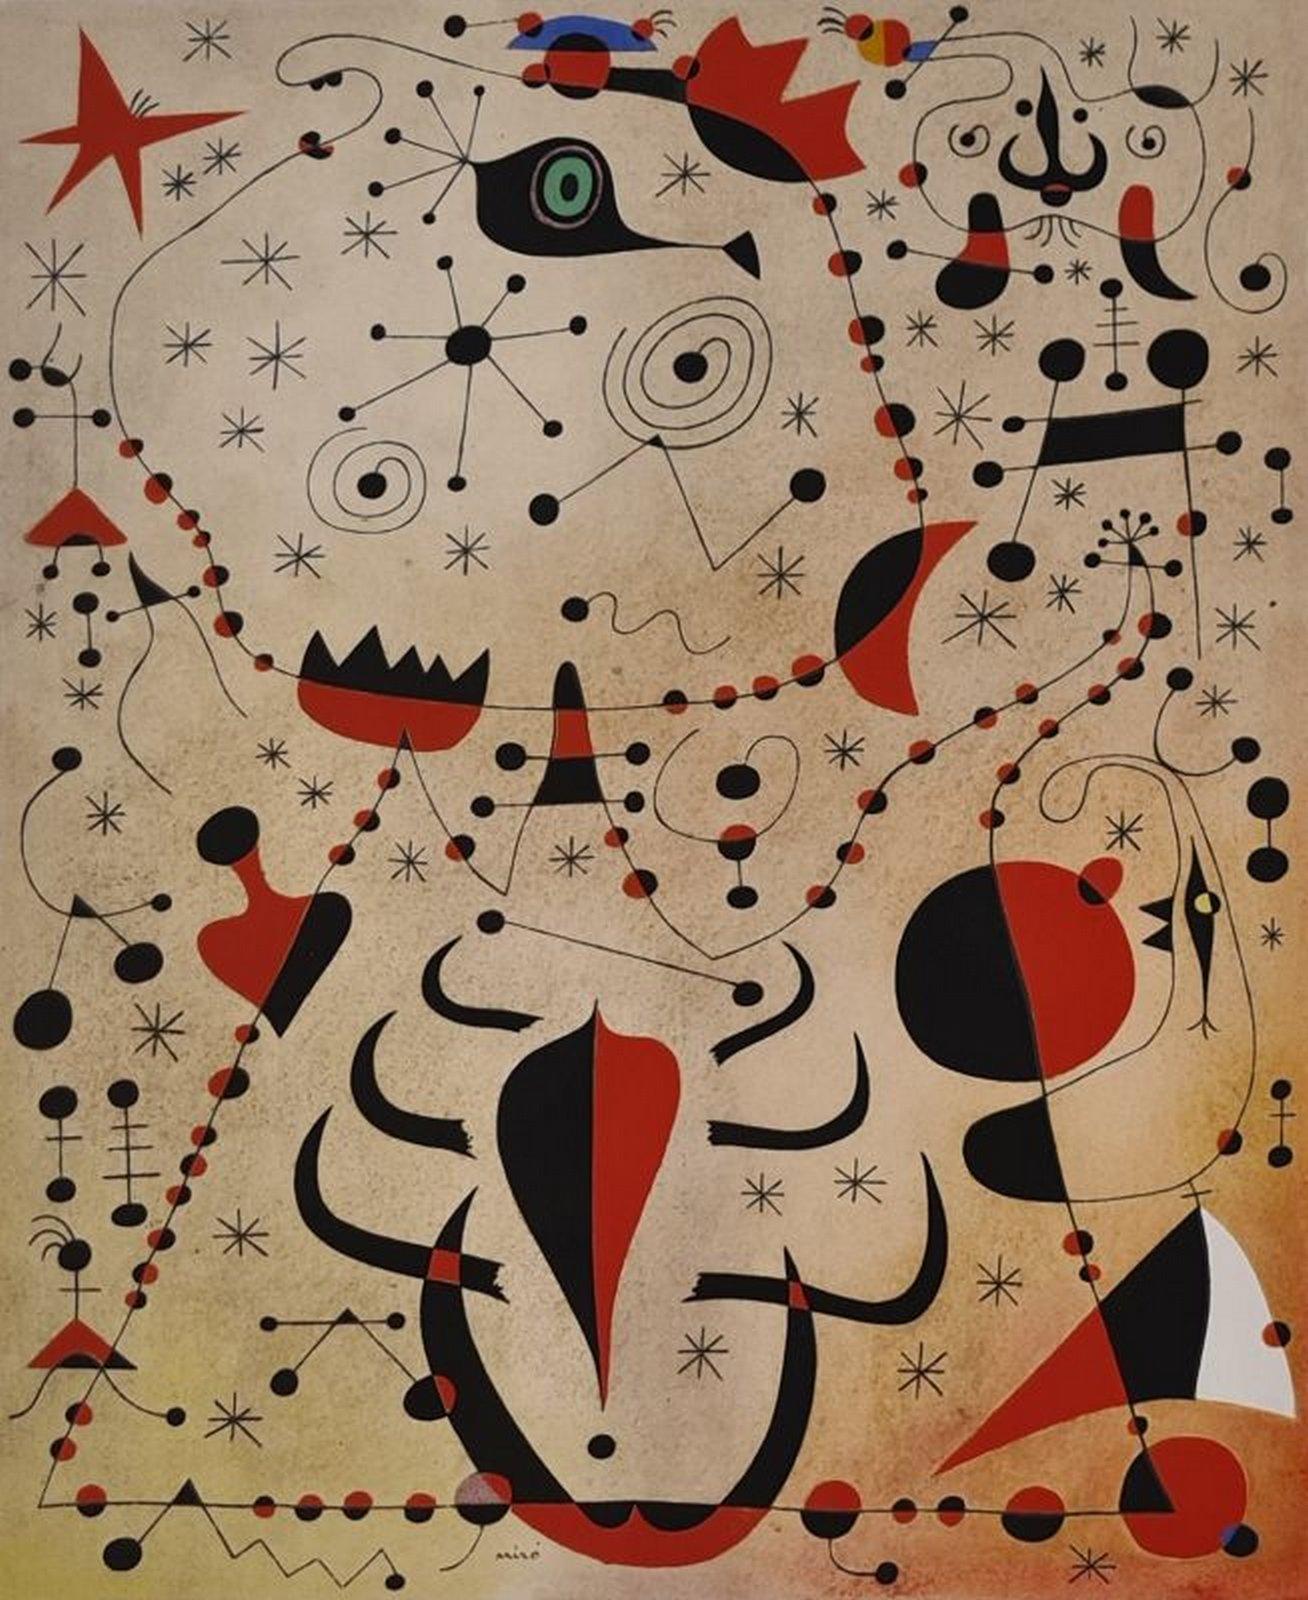 (after) Joan Miró Abstract Print - Le crépuscule rose caresse le sexe des femmes et des oiseaux 